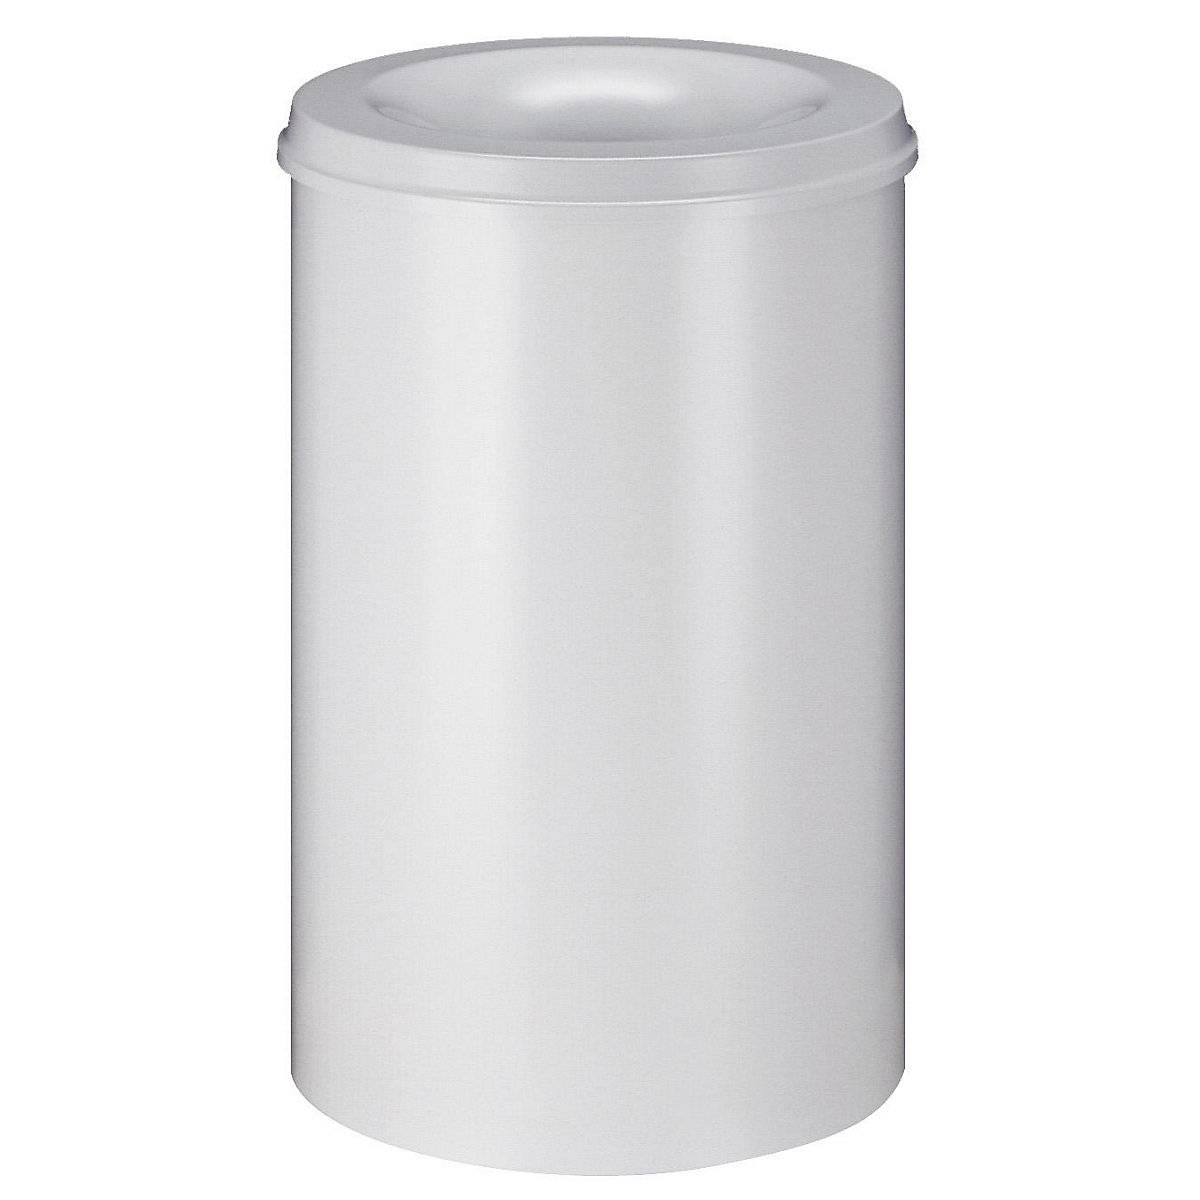 Sicherheits-Papierkorb, Stahl, selbstlöschend, Volumen 110 l, HxØ 720 x 470 mm, Korpus weiß / Löschkopf weiß-10